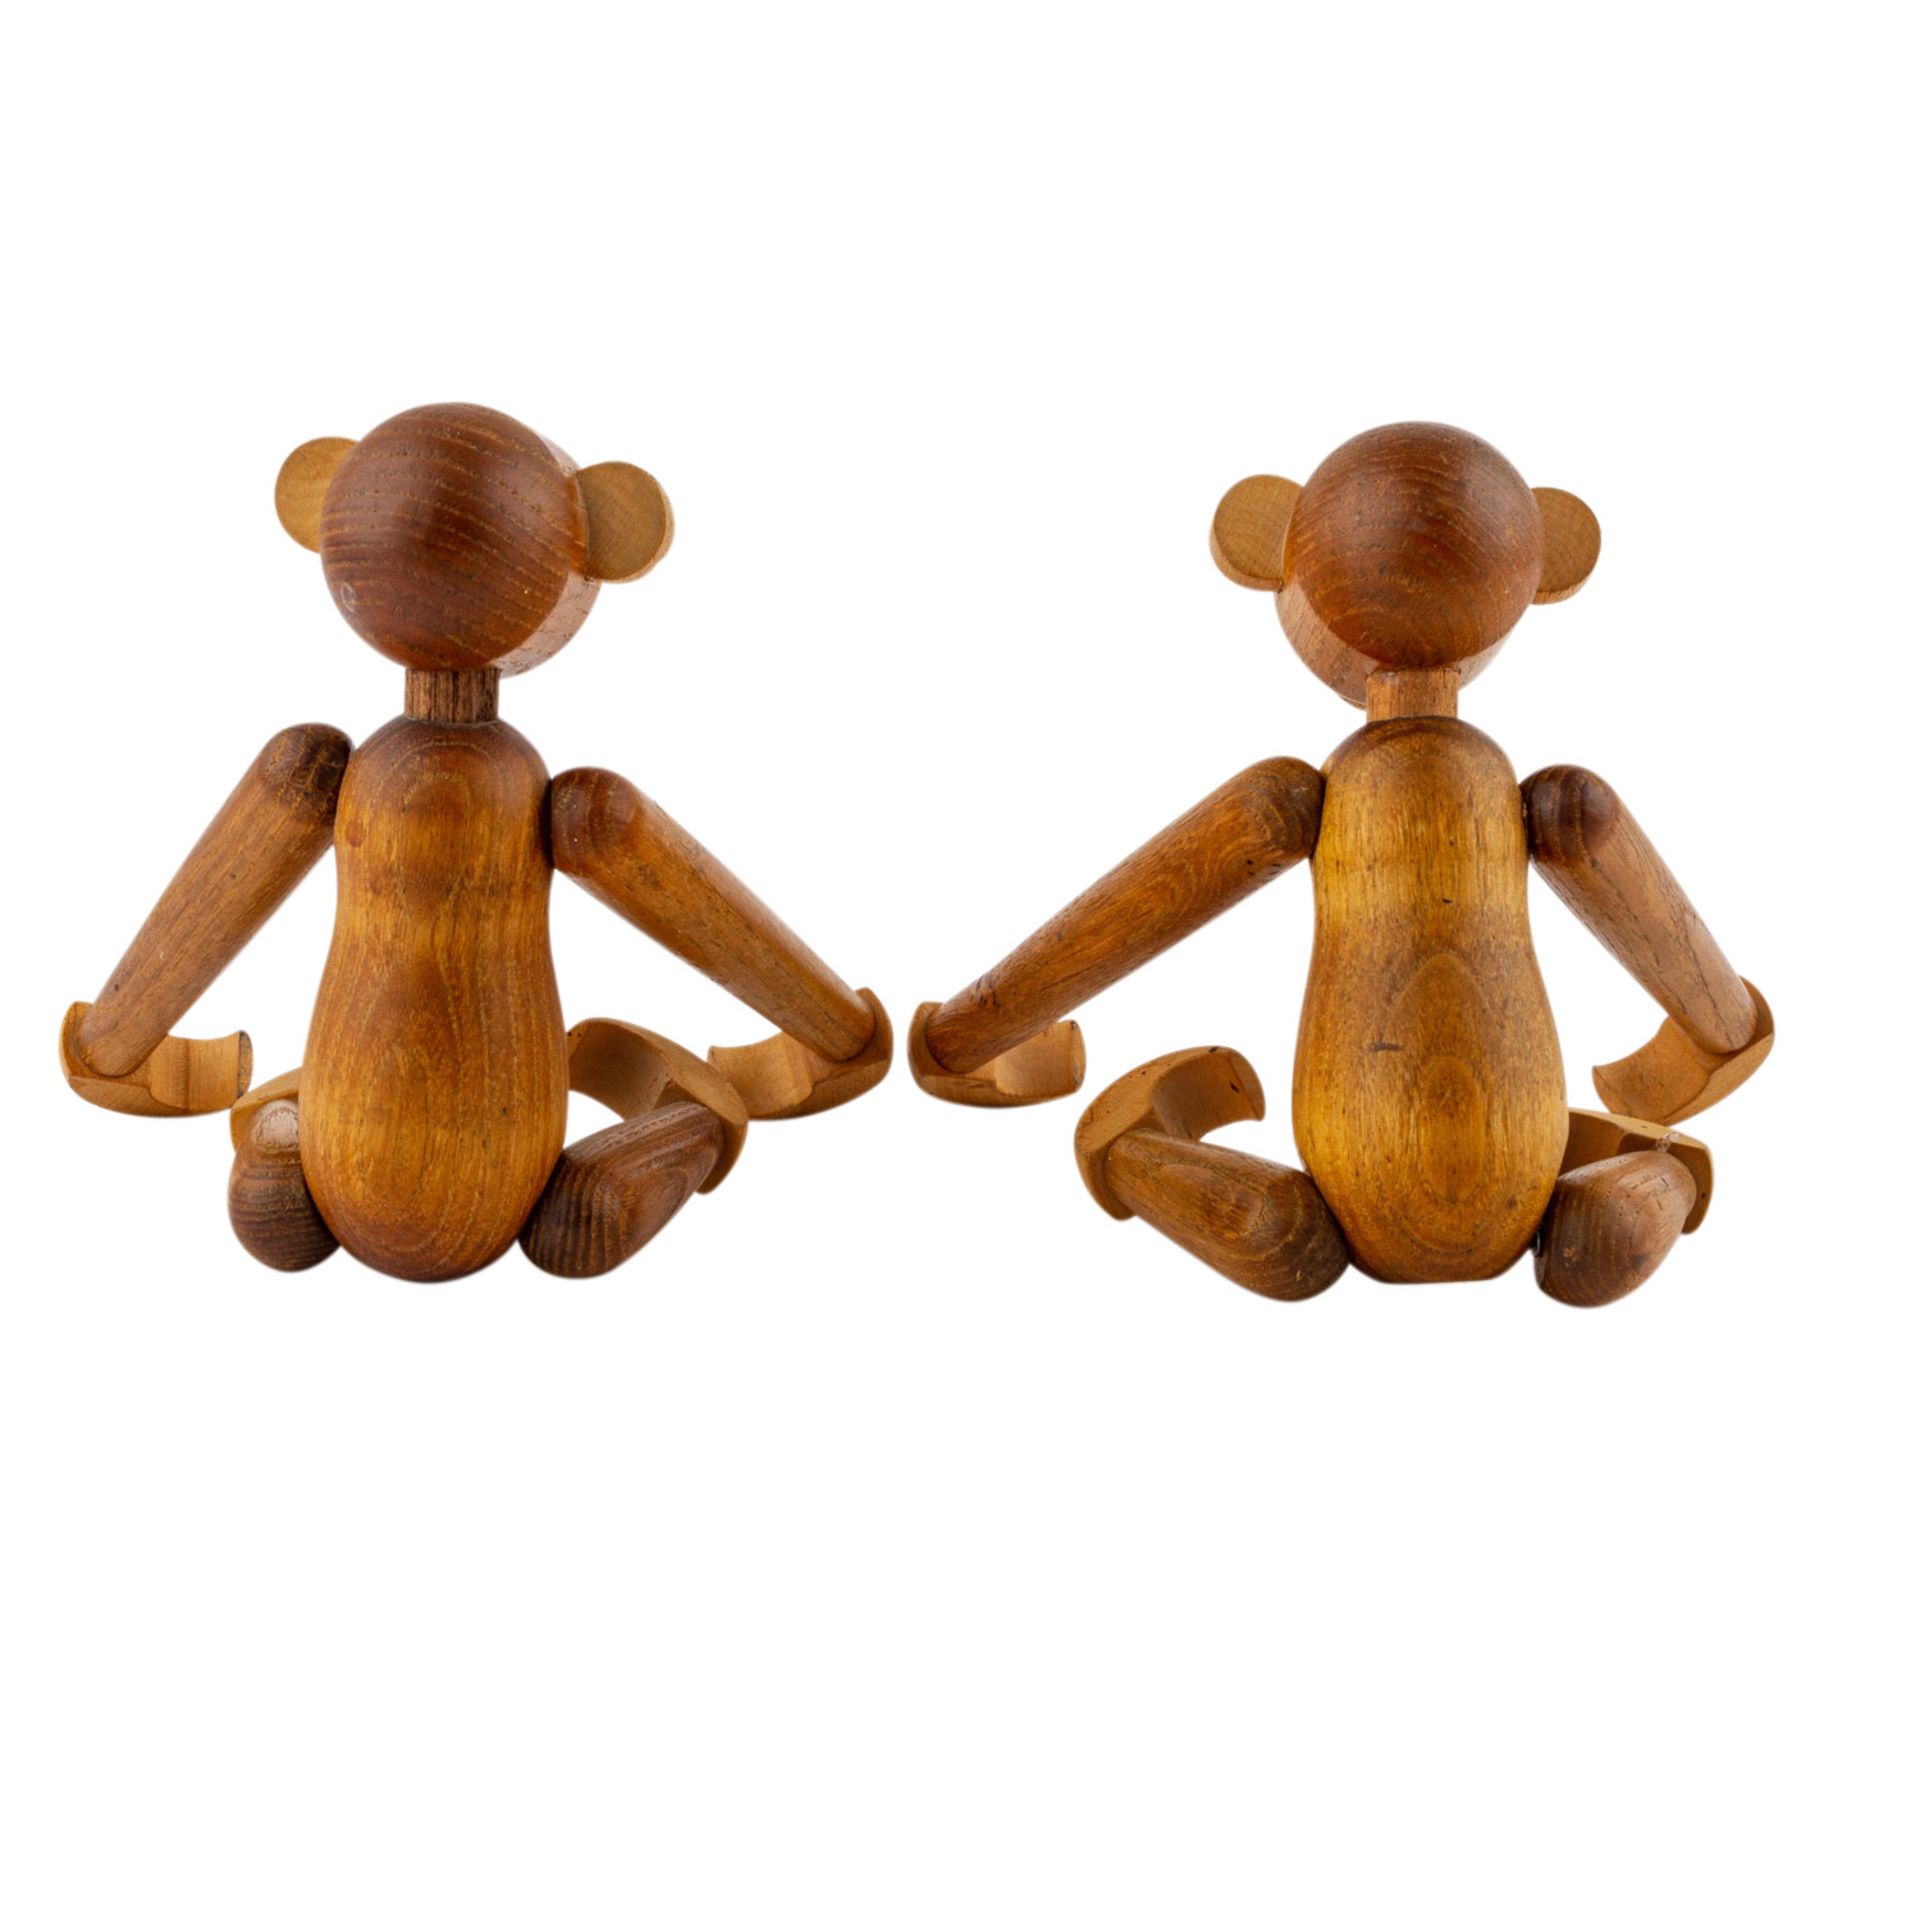 BOJESEN, KAY ( attribuiert) "Zwei Affen"50/60er Jahre, Teak-Holz Figur, H: 19 cm. Altersspuren. - Image 2 of 4